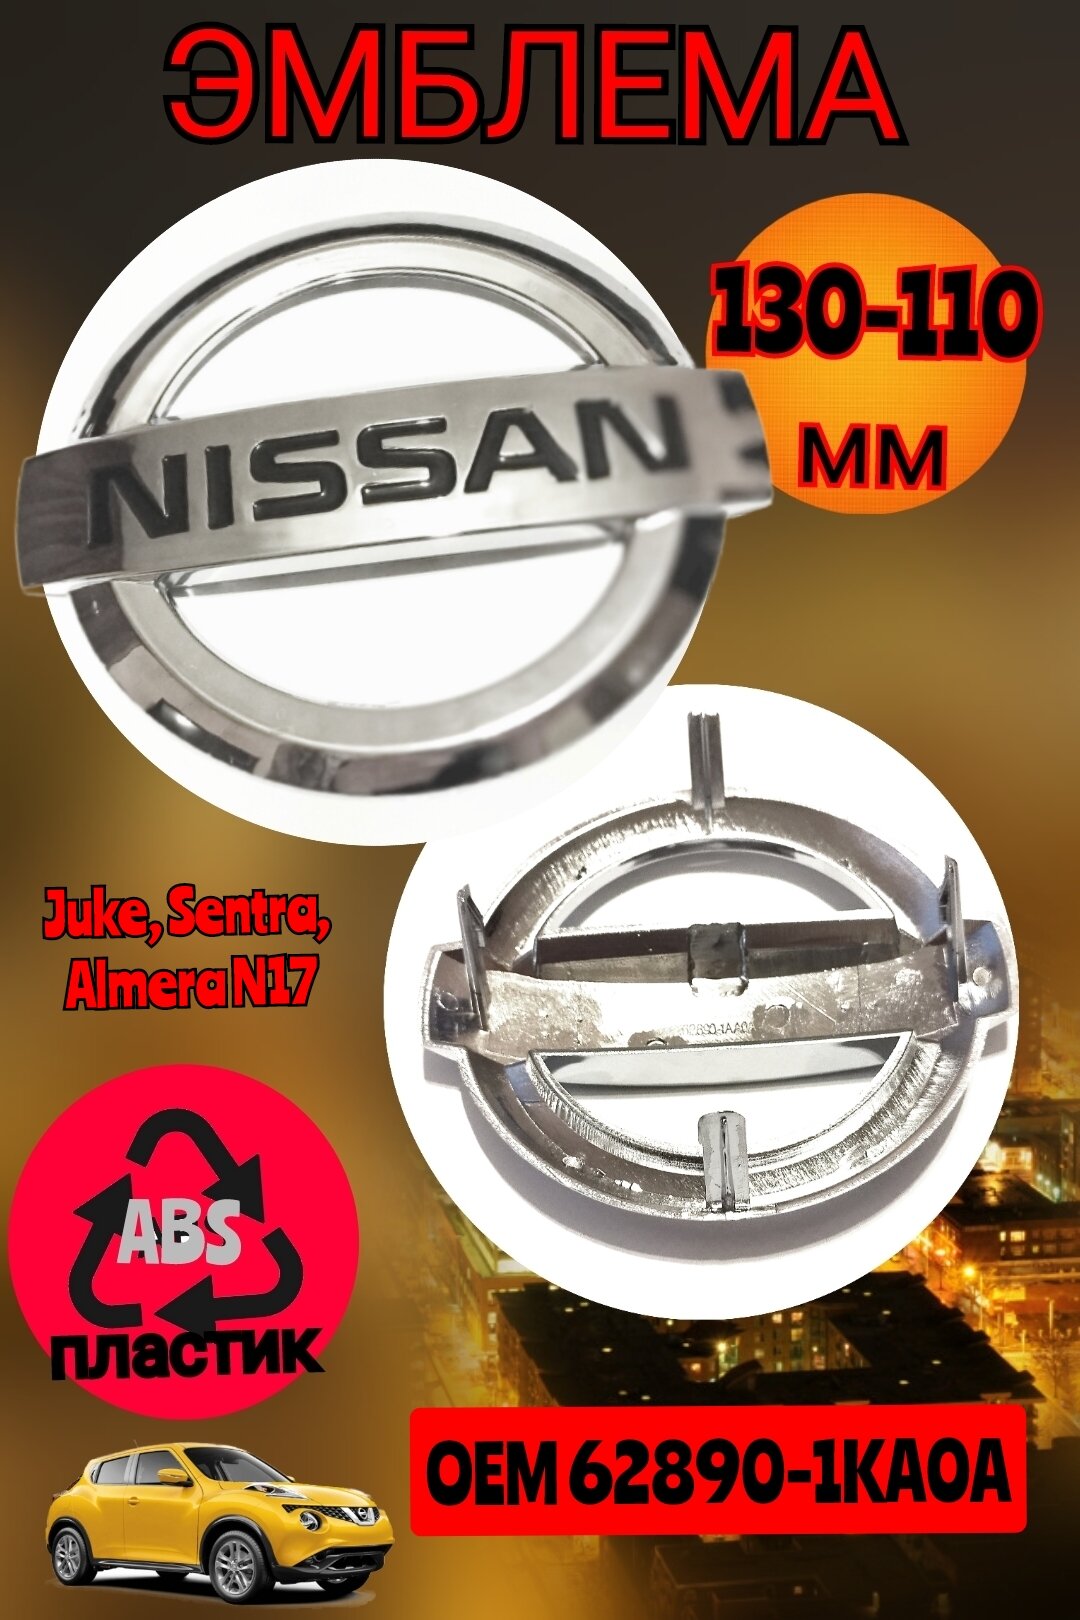 Эмблема ( орнамент шильдик ) на решетку радиатора для автомобиля Ниссан Nissan 130х110 мм цвет хром